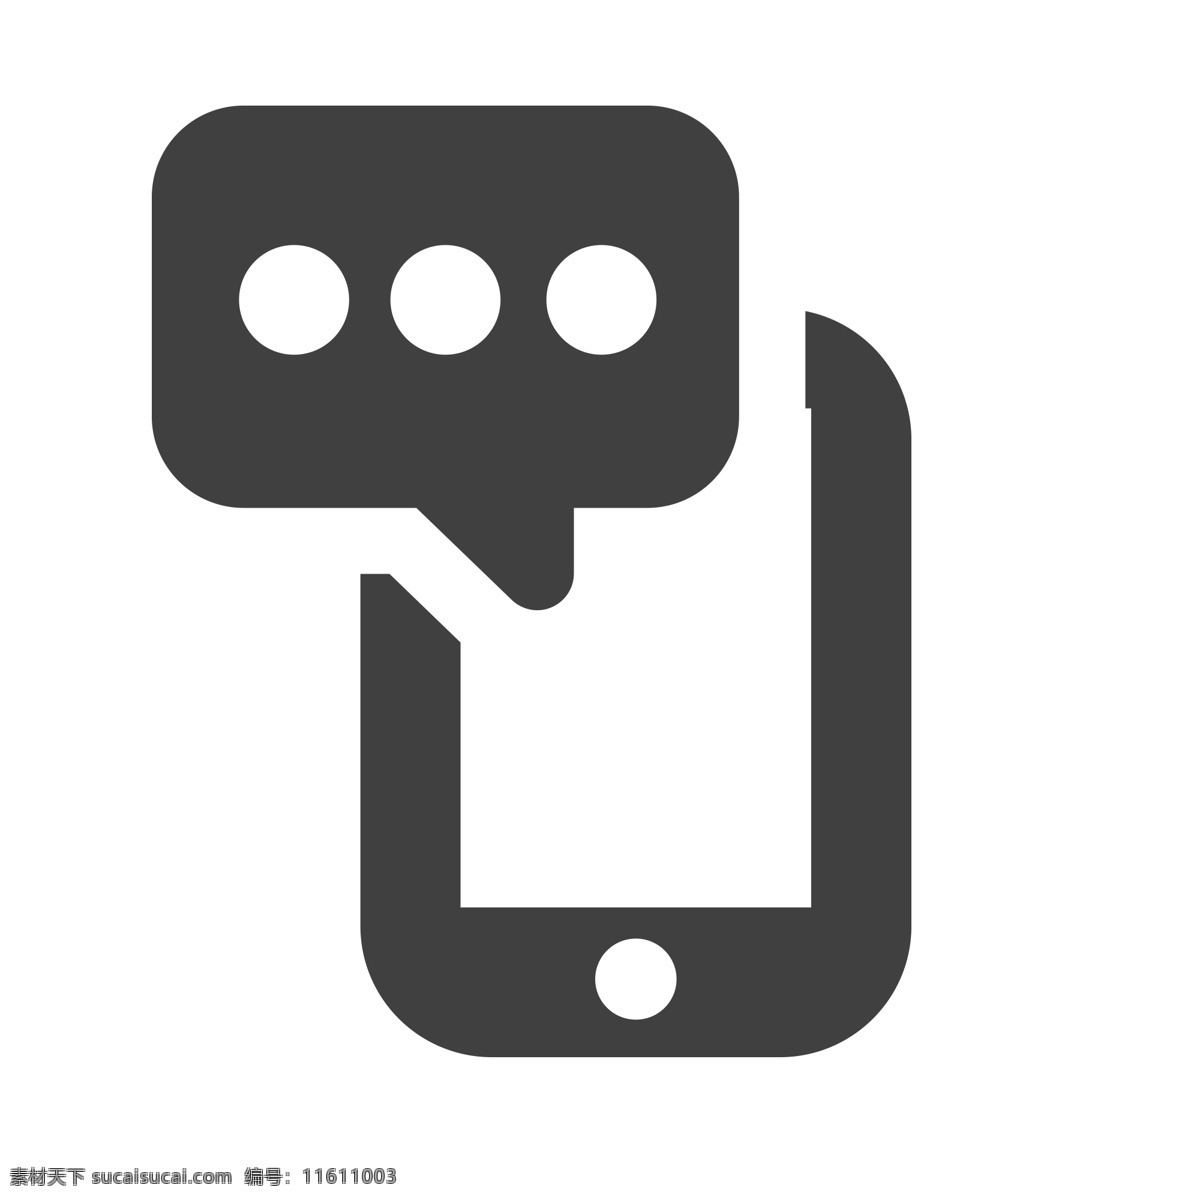 手机信息 发送短信 扁平化ui ui图标 手机图标 界面ui 网页ui h5图标